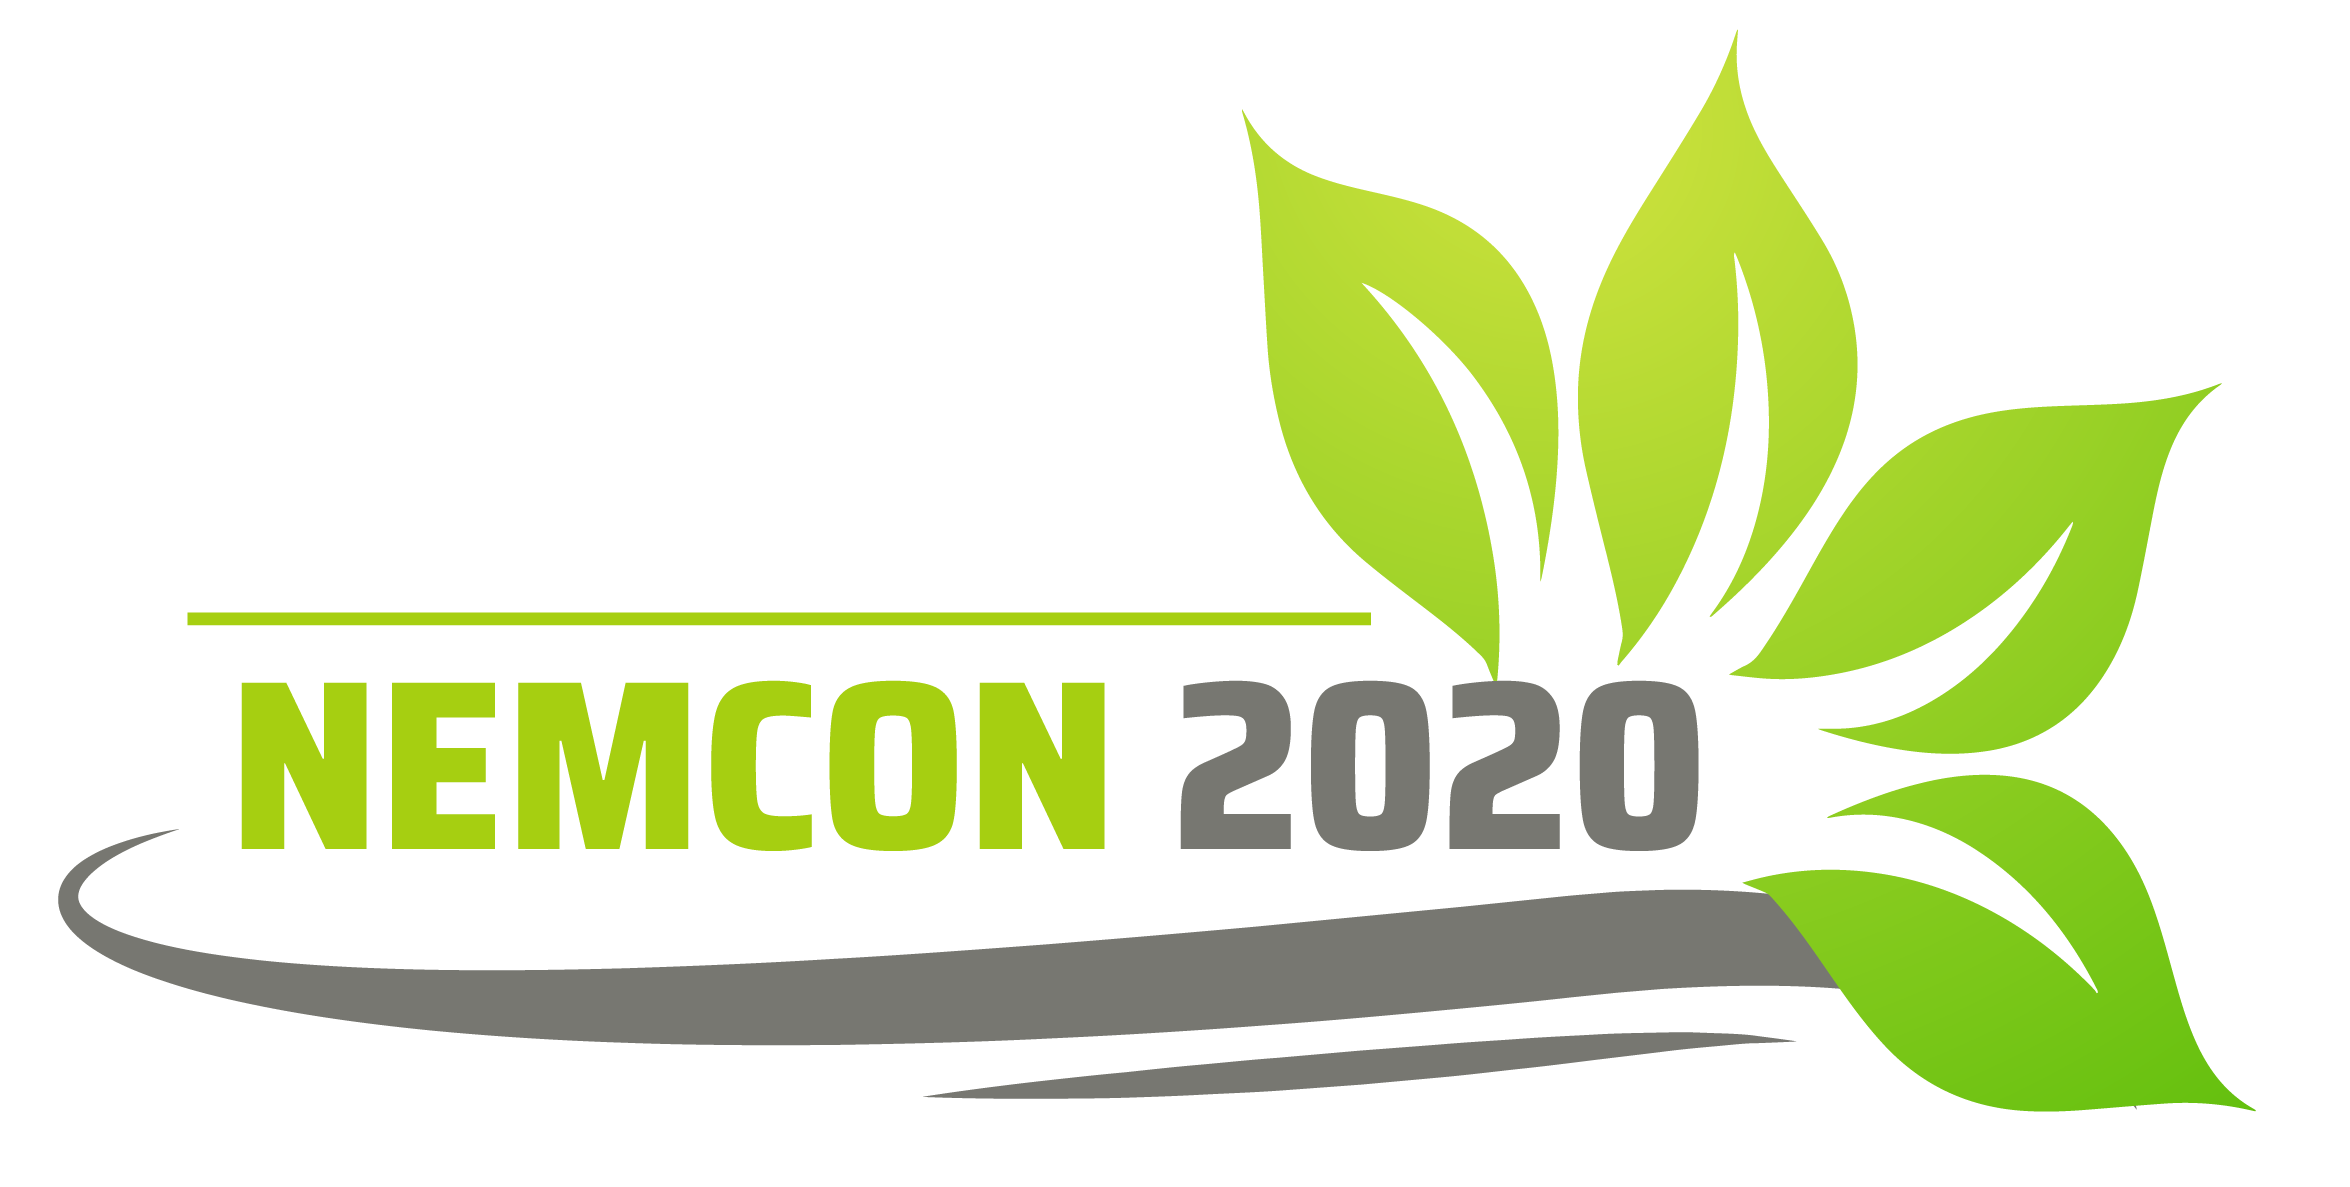 The official logo of Nemcon 2020